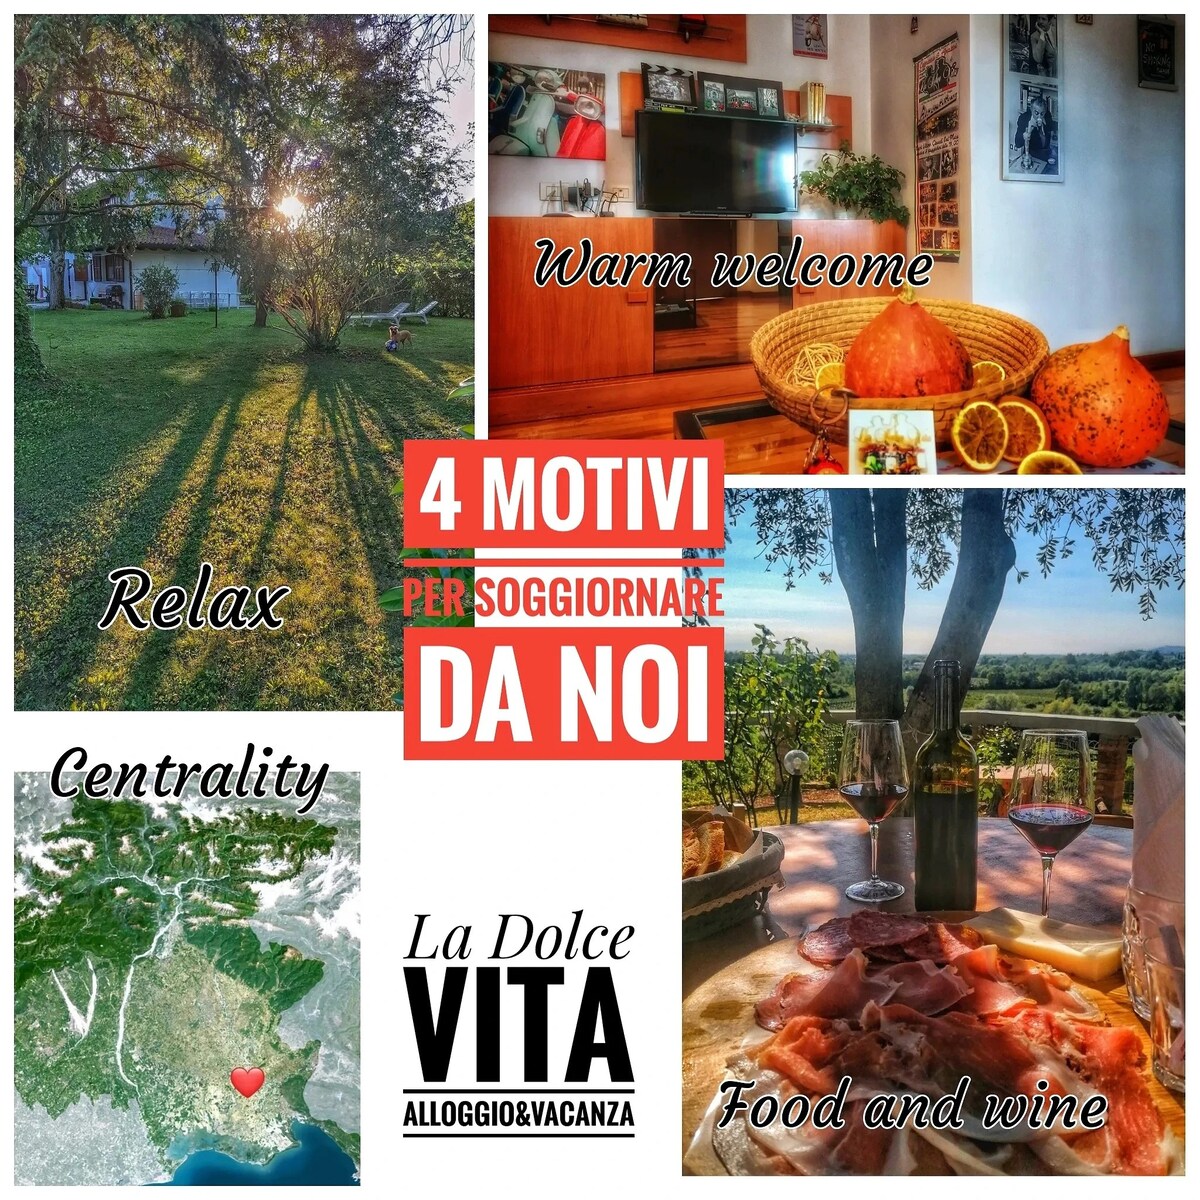 位于Friuli市中心的La Dolce Vita Verde位置